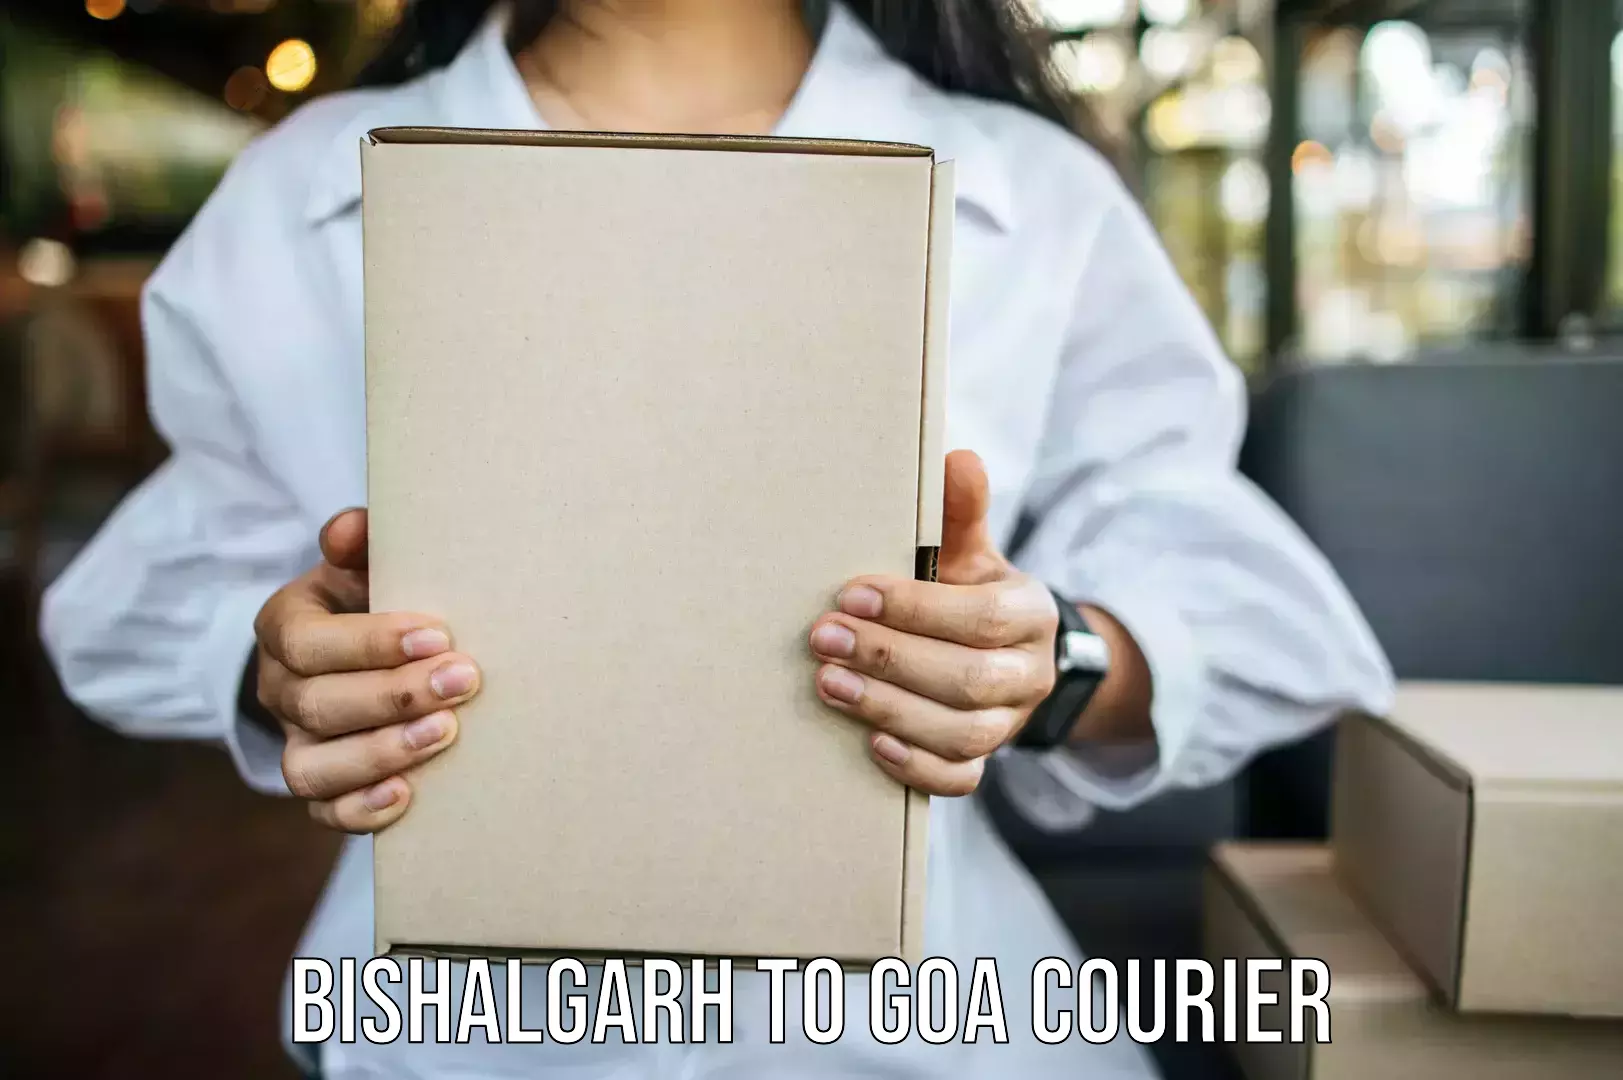 Furniture moving experts Bishalgarh to Goa